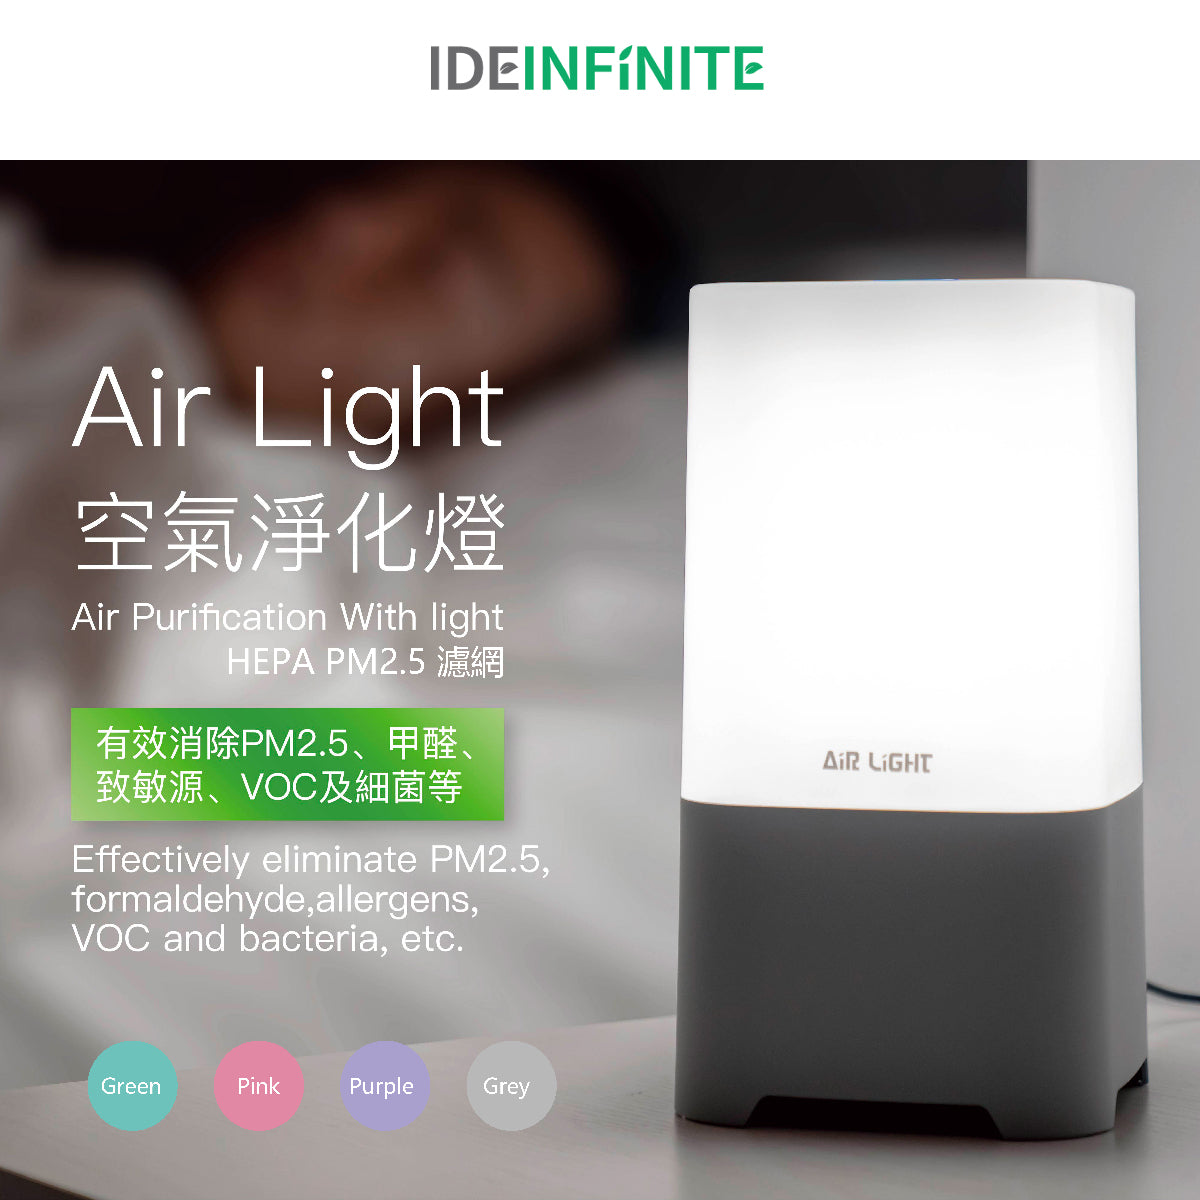 Air Light - 2合1 空氣淨化機 (PM2.5 HEPA 高效濾網) 內置 LED 燈 ~ 粉綠